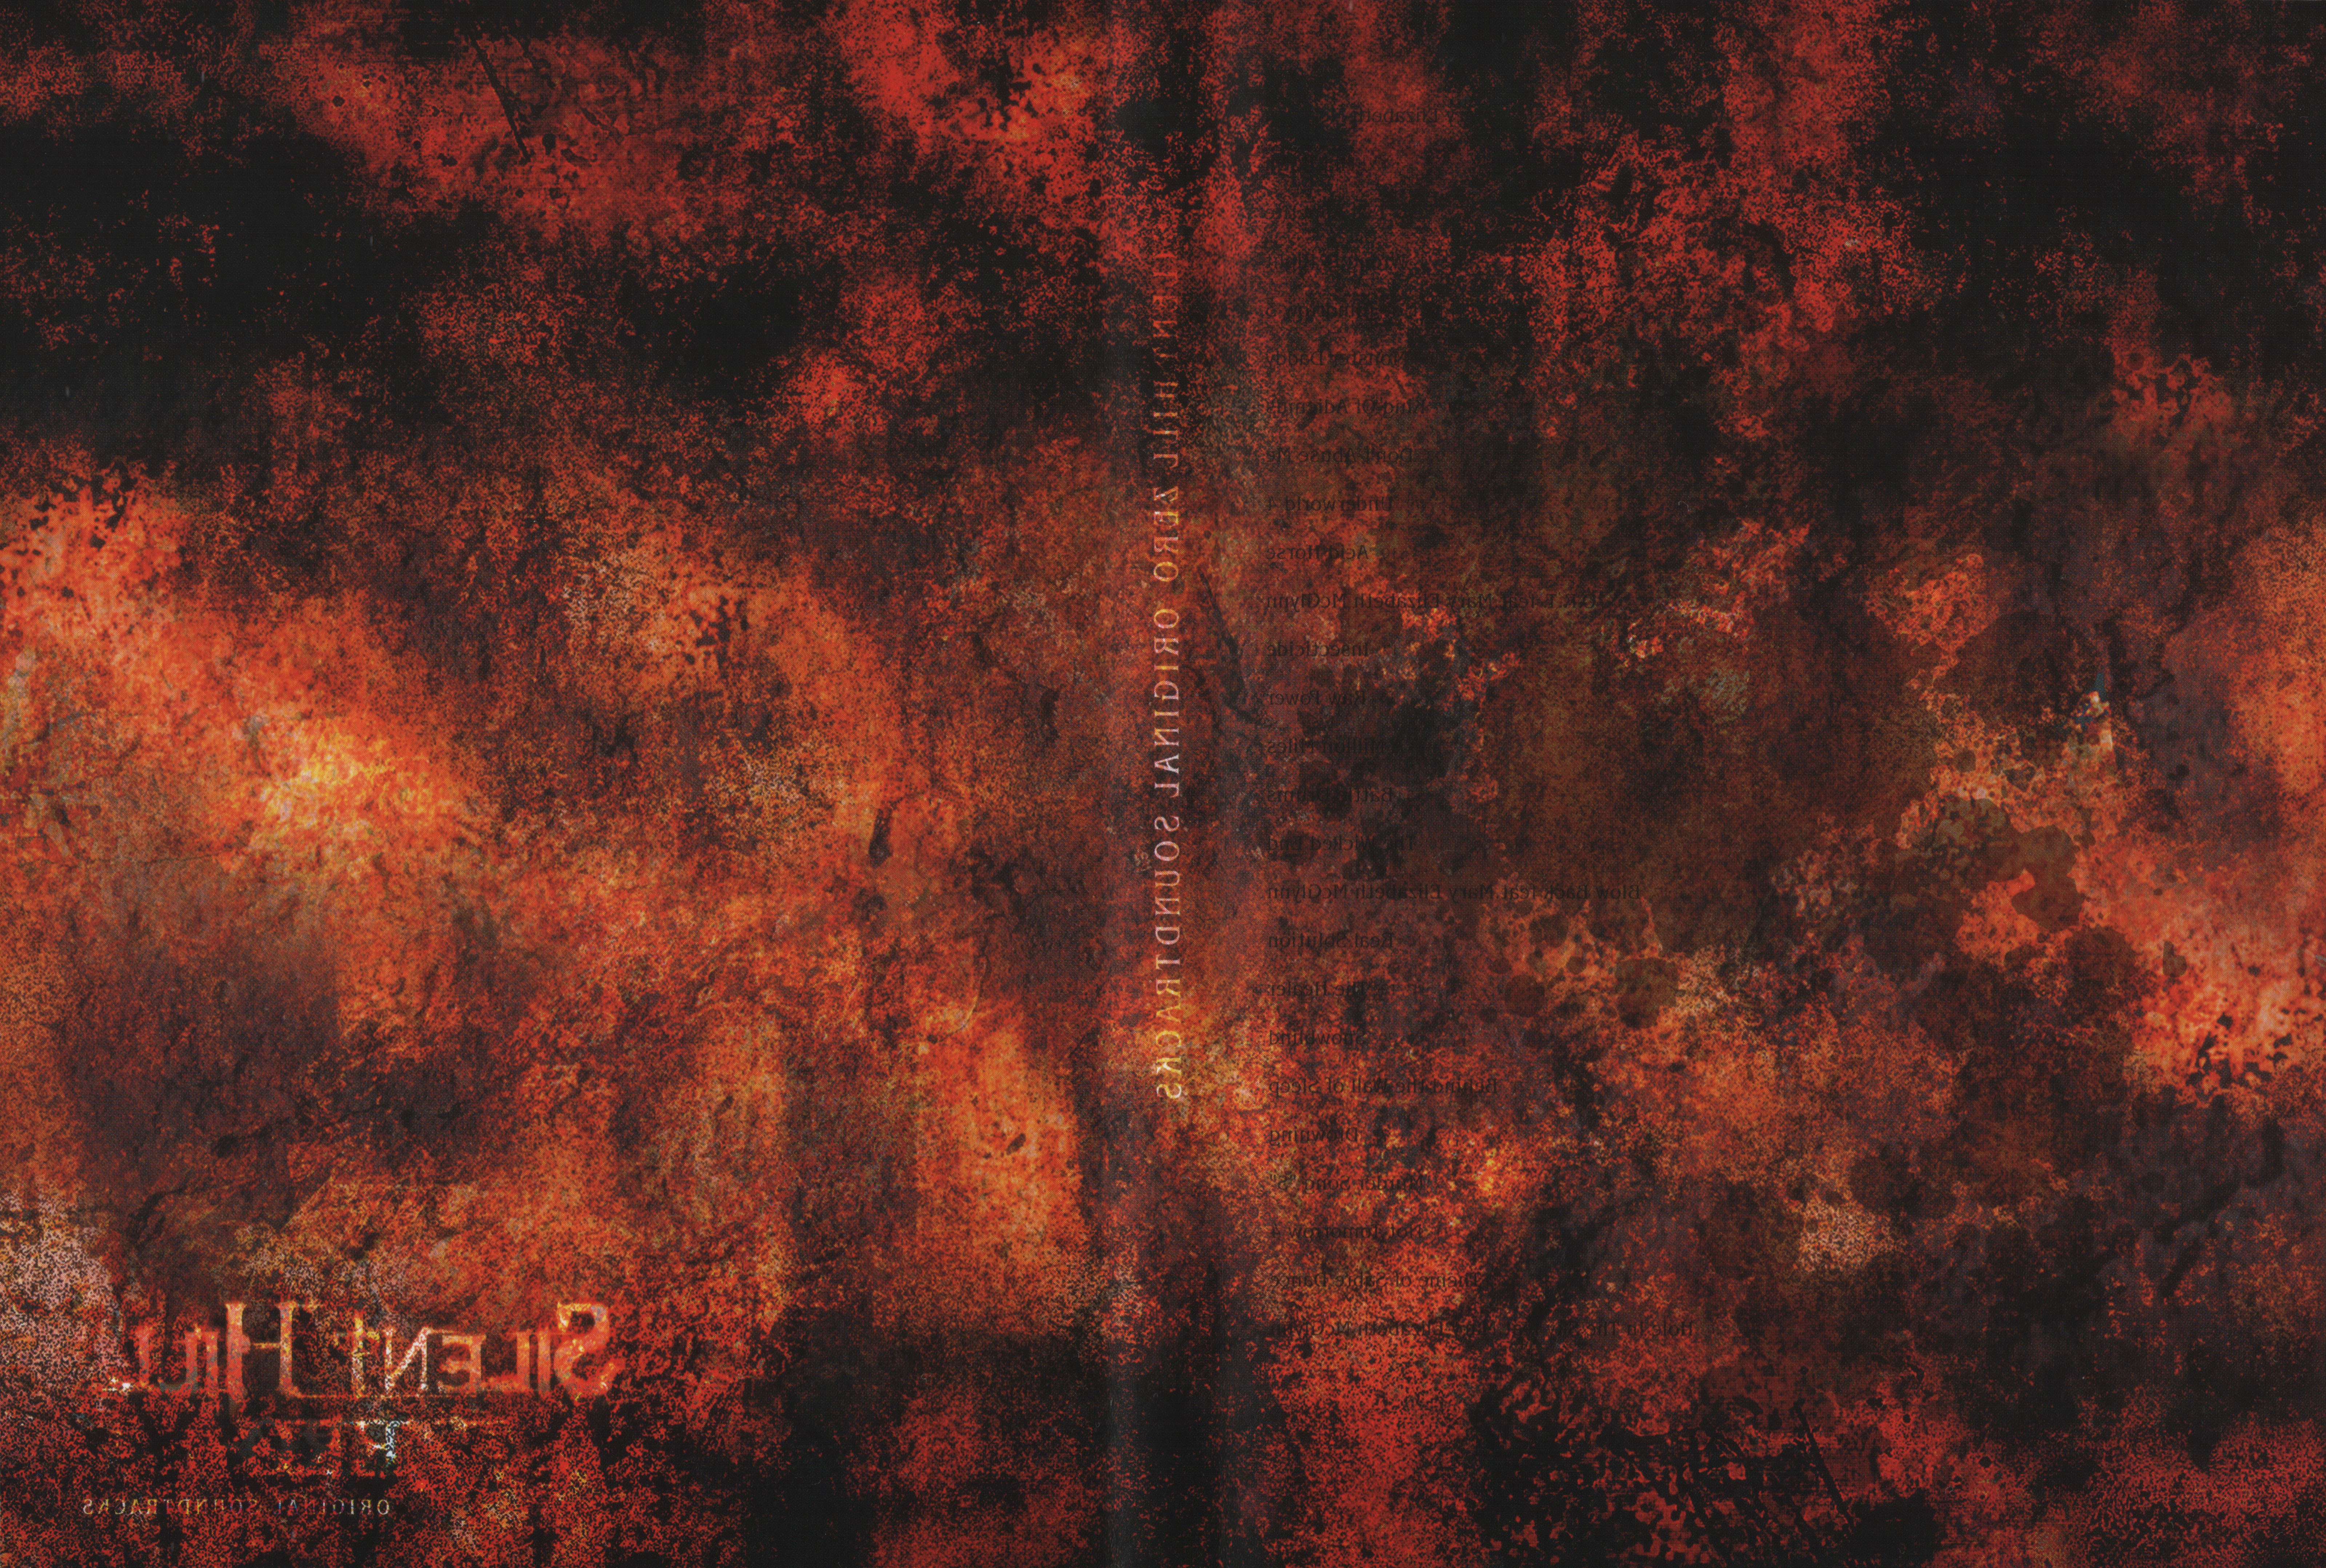 Release “Silent Hill: Zero: Original Soundtracks” by Akira Yamaoka 